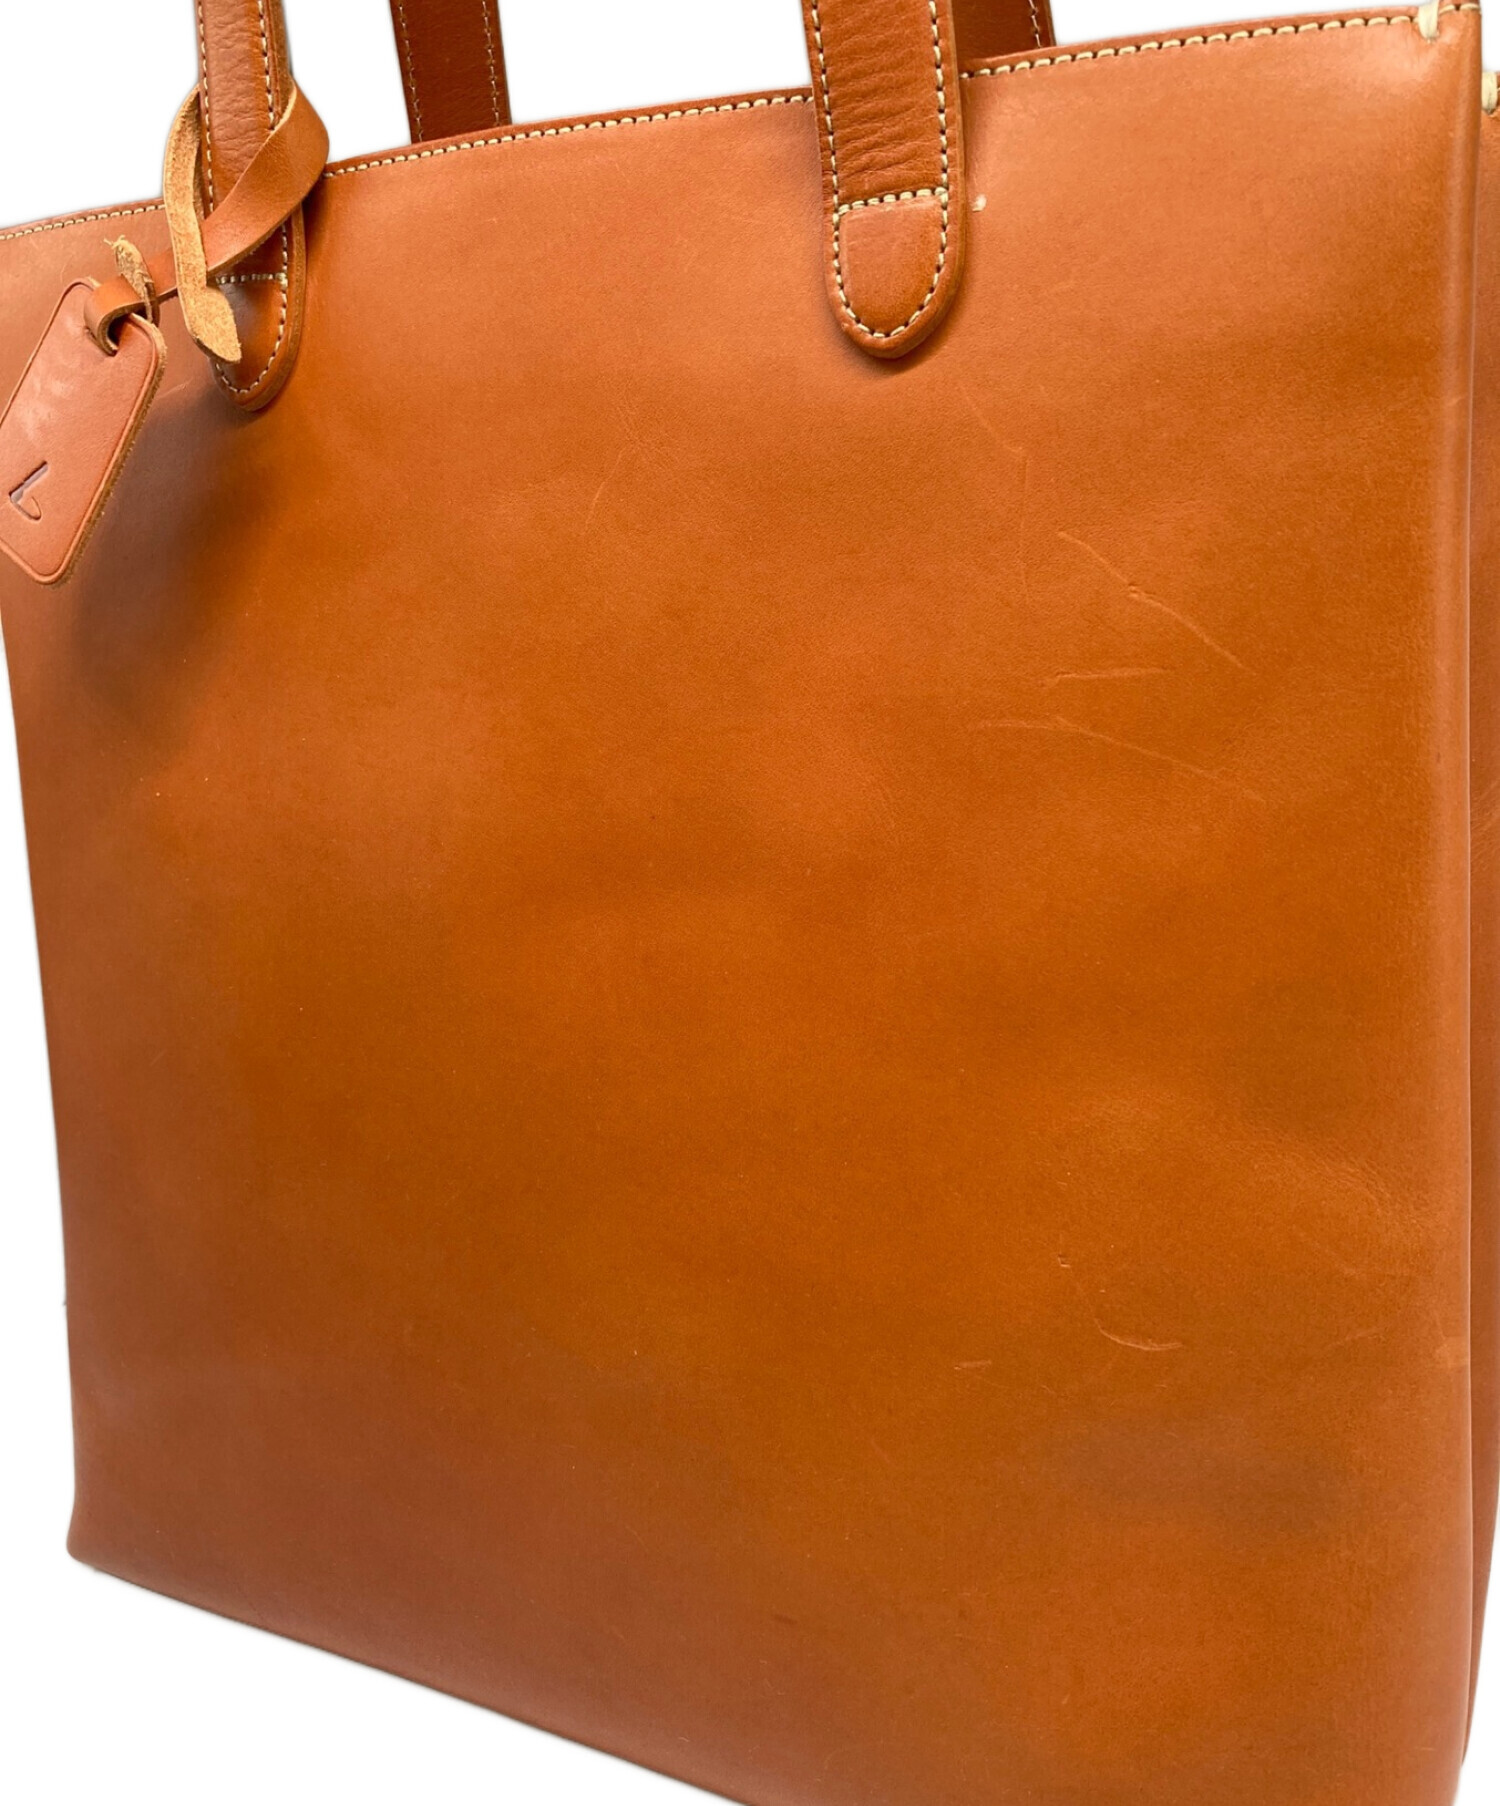 土屋鞄 (ツチヤカバン) レザートートバッグ オレンジ